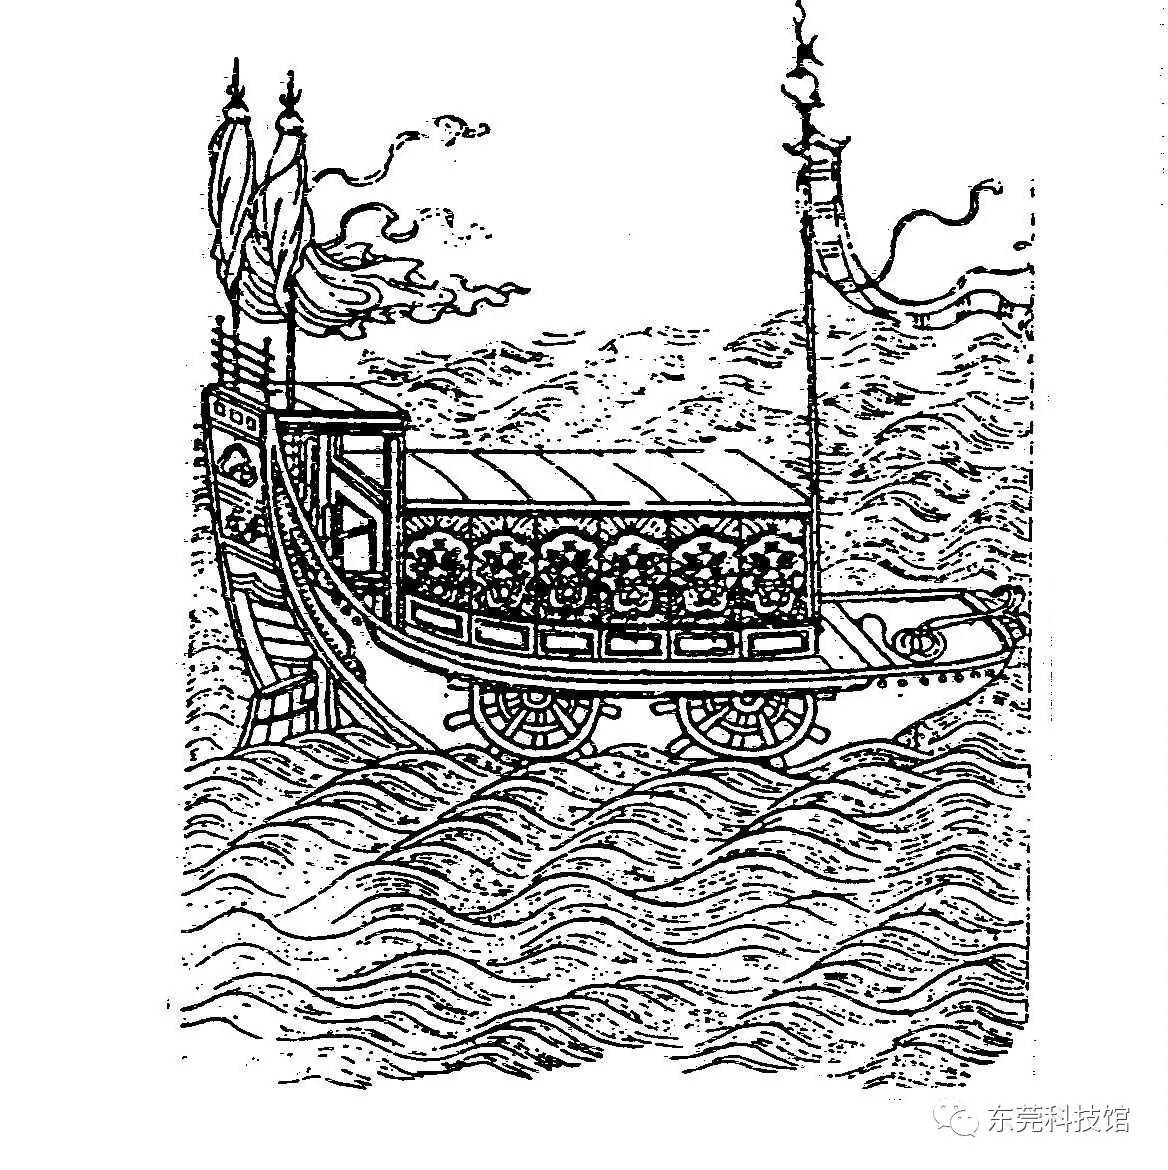 千里船后人绘制图祖冲之在新亭江(在今南京市西南)为他的千里船所